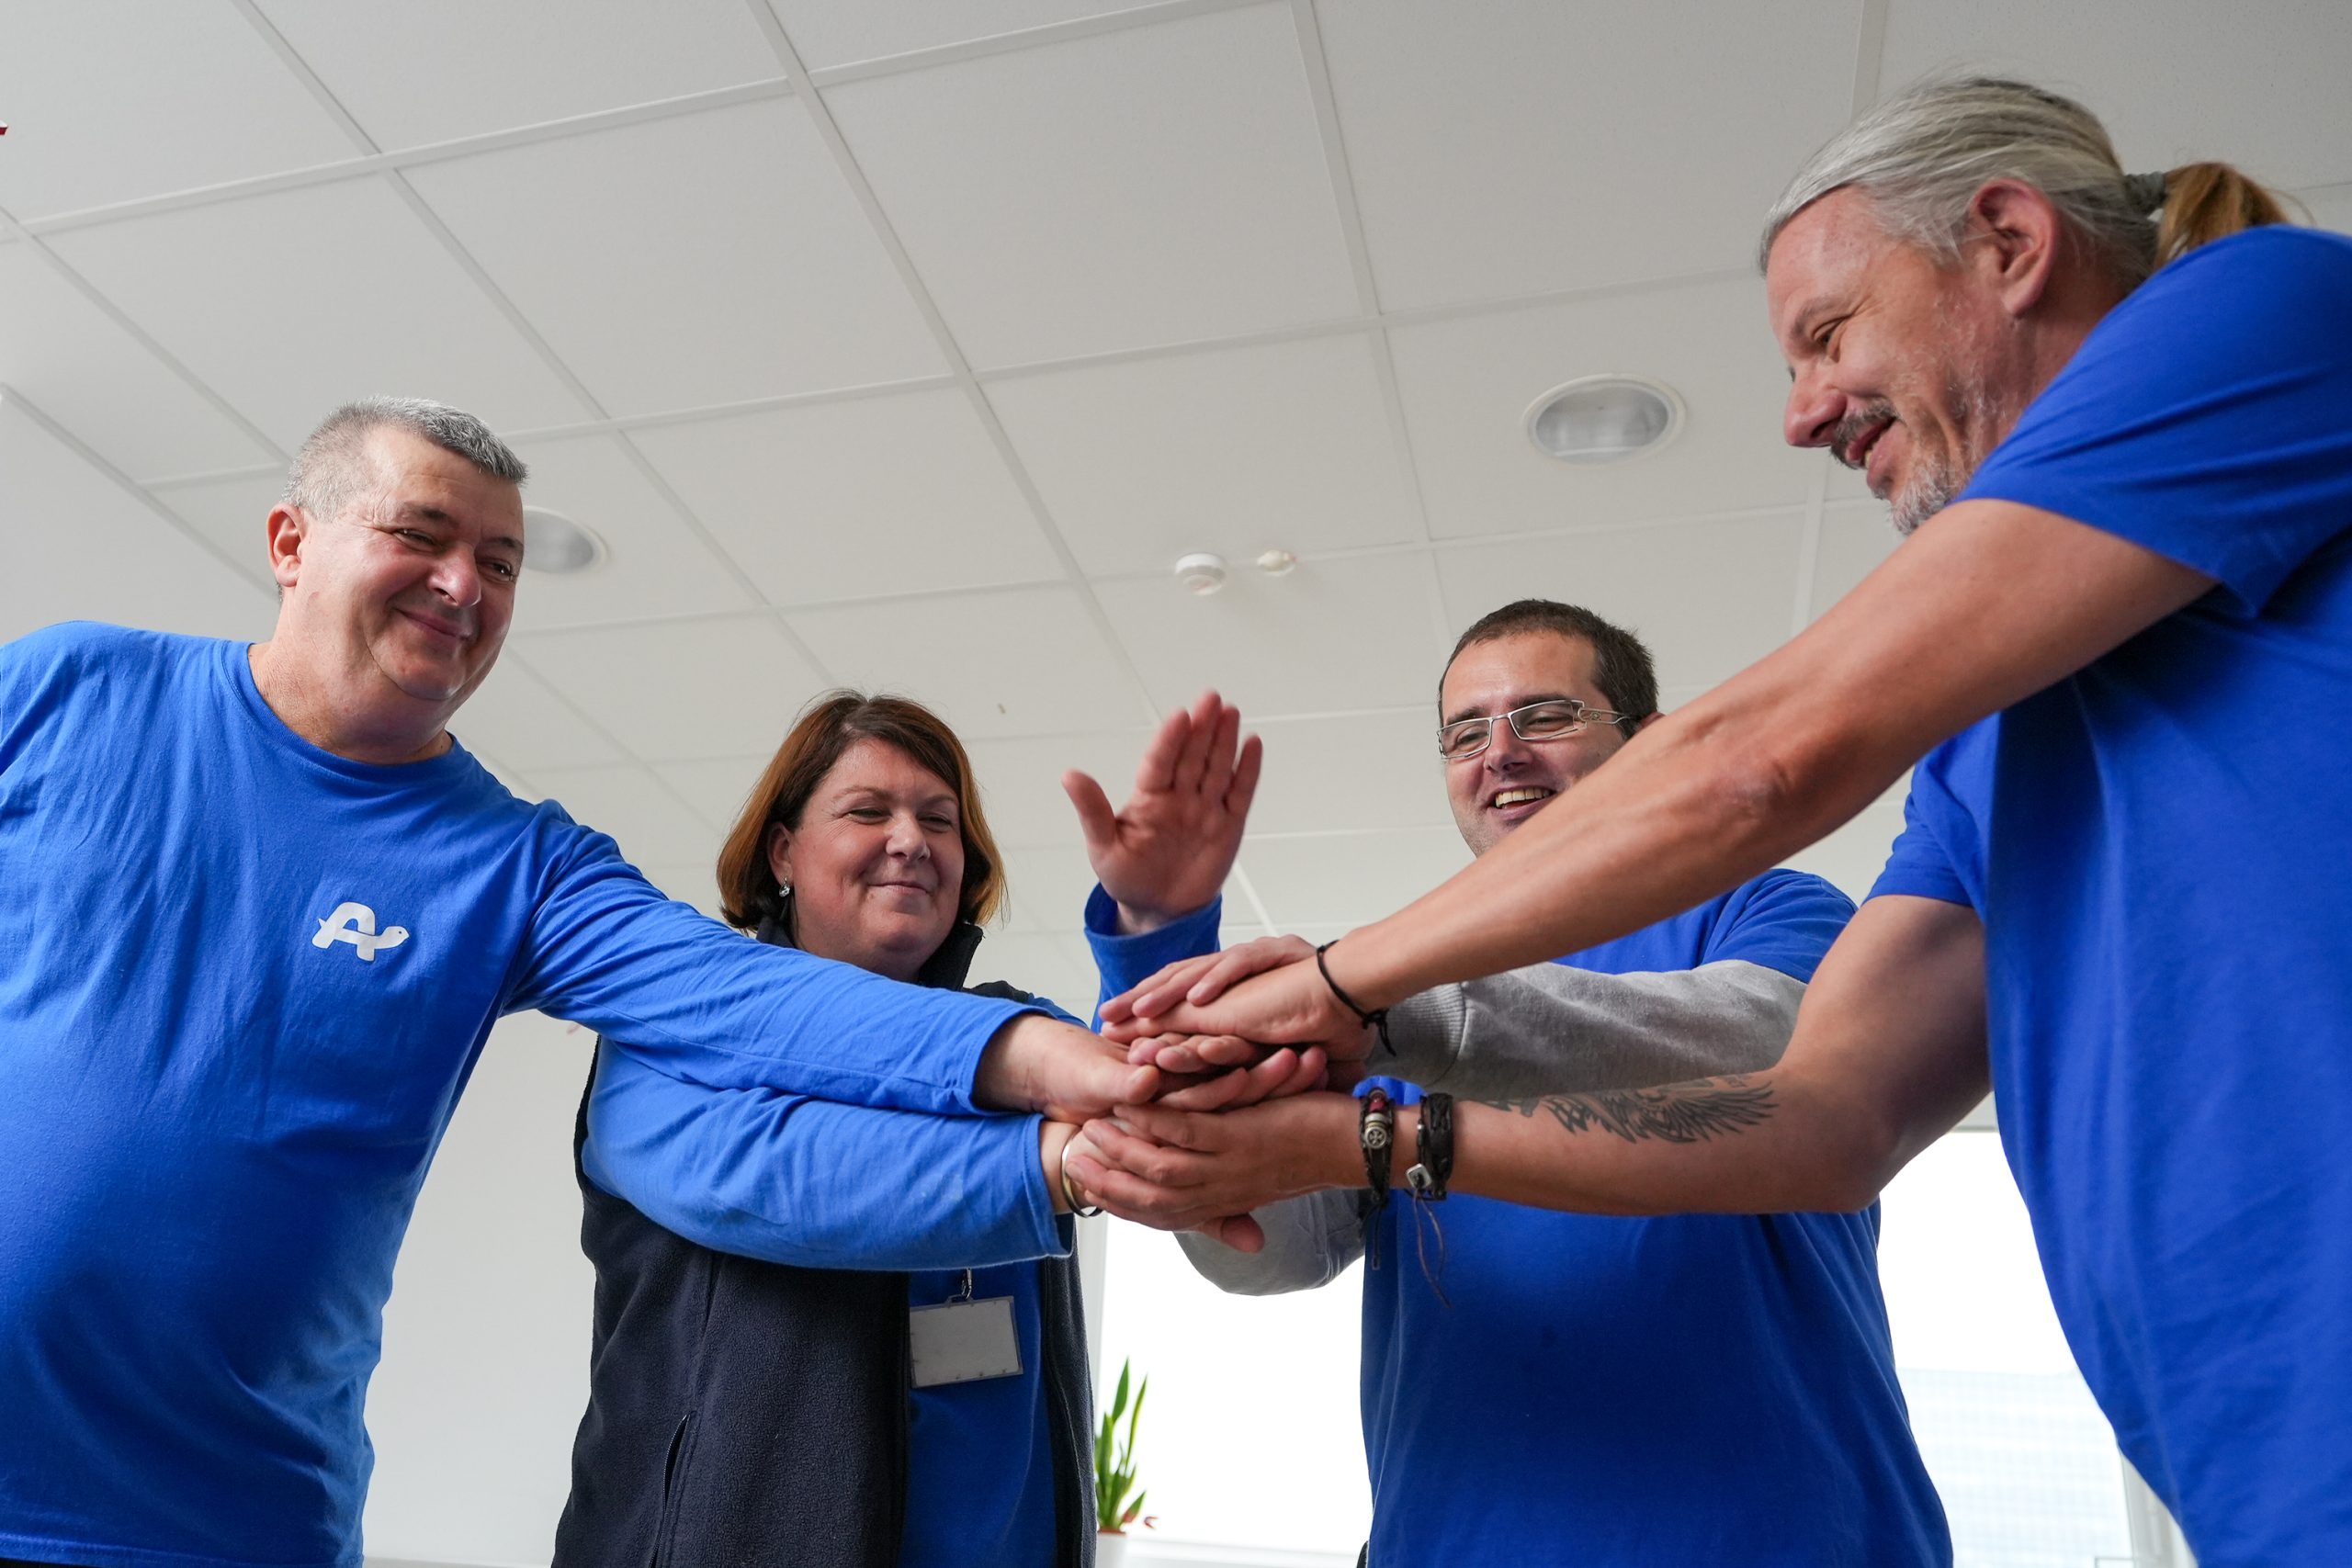 Ekipa nasmejanih sodelavcev v službenih oblačilih modre barve s polaganjem rok na en kup prikazuje sodelovanje in ekipni duh.